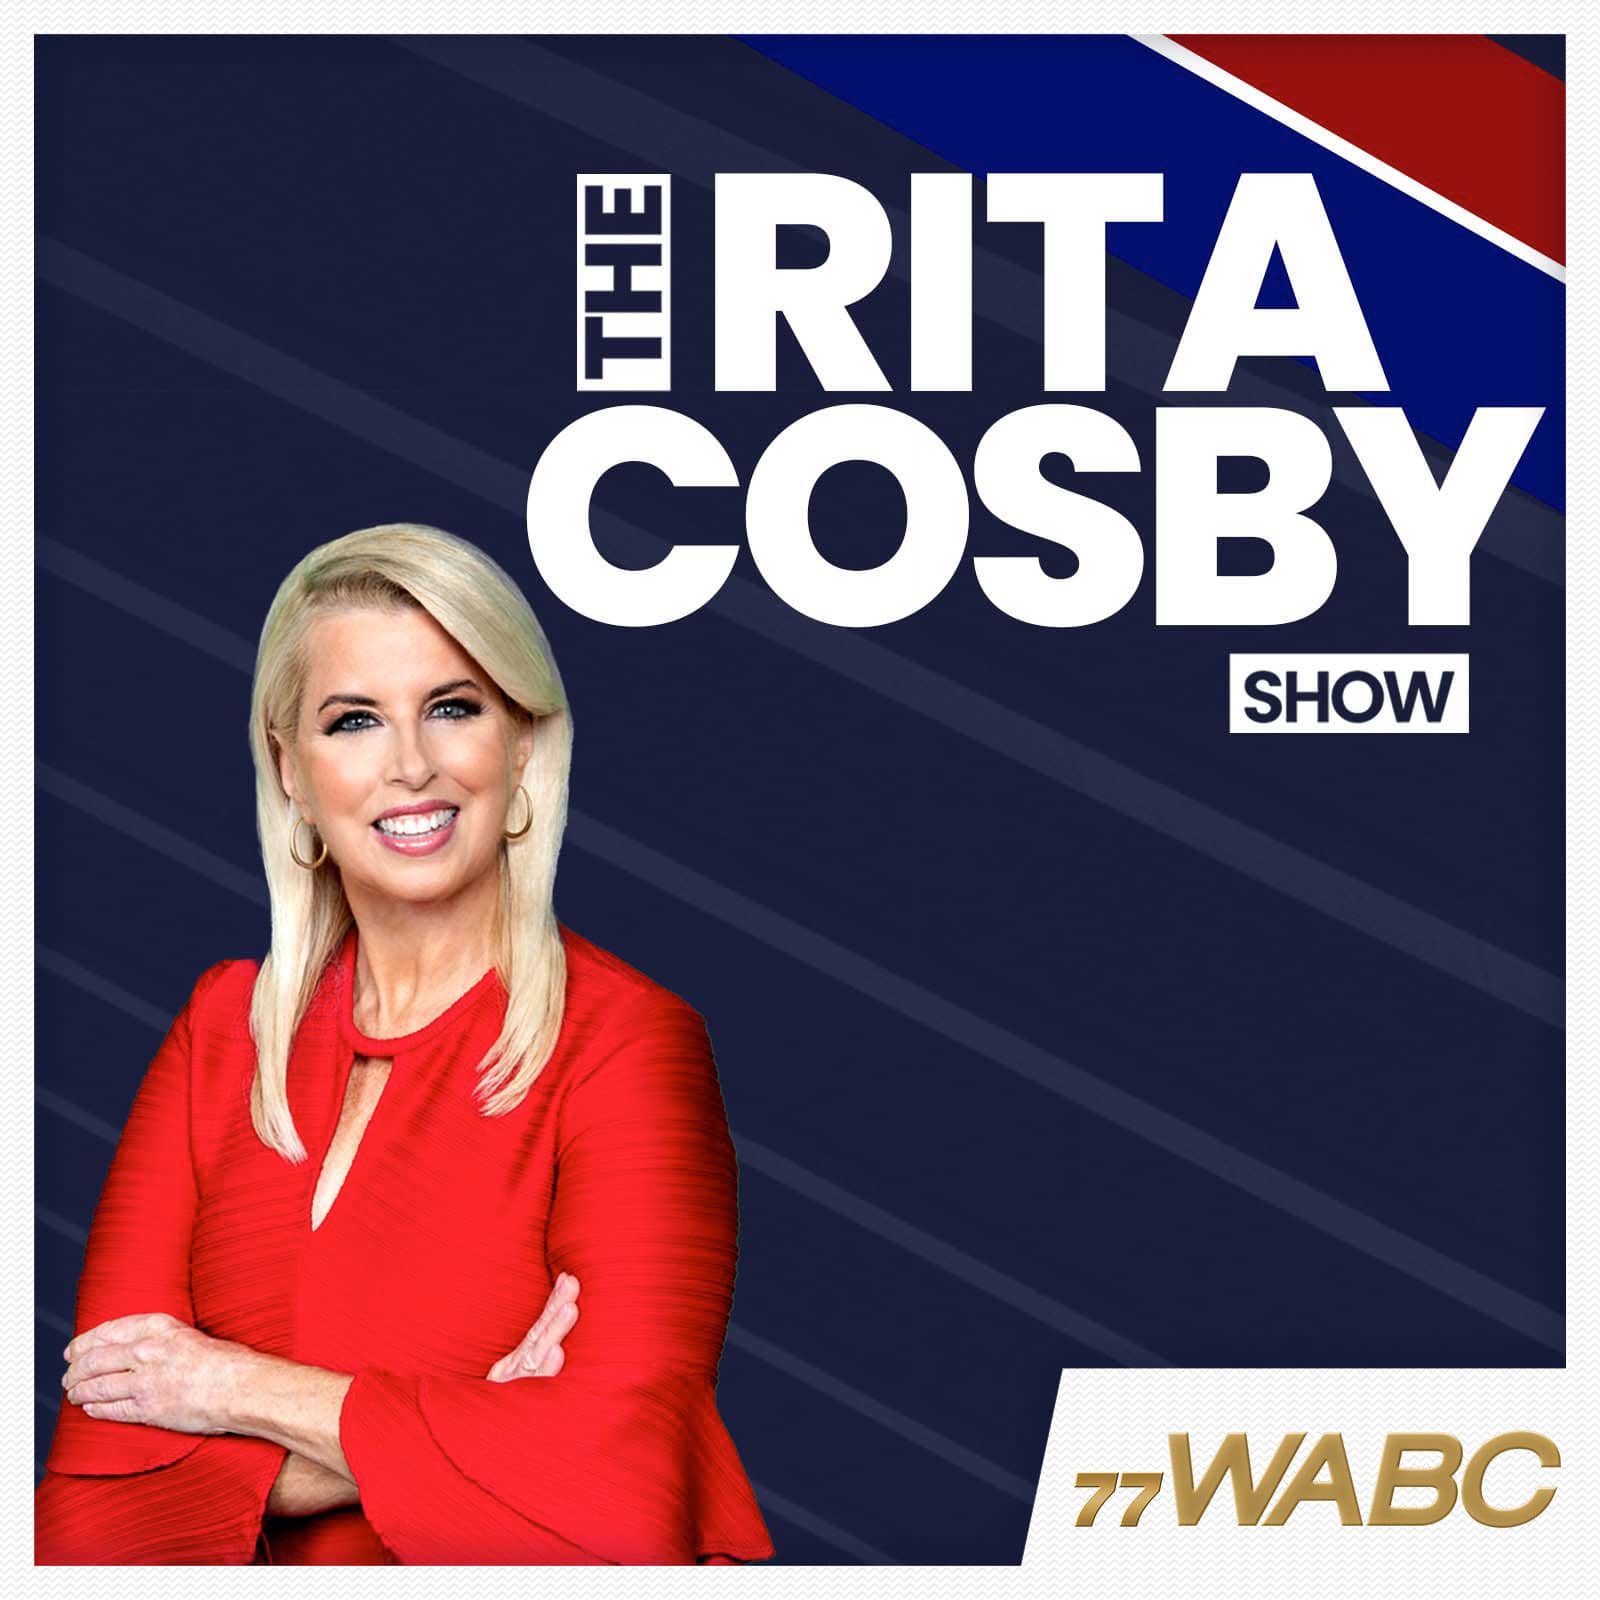 rita-cosby-podcast-new-logo88793